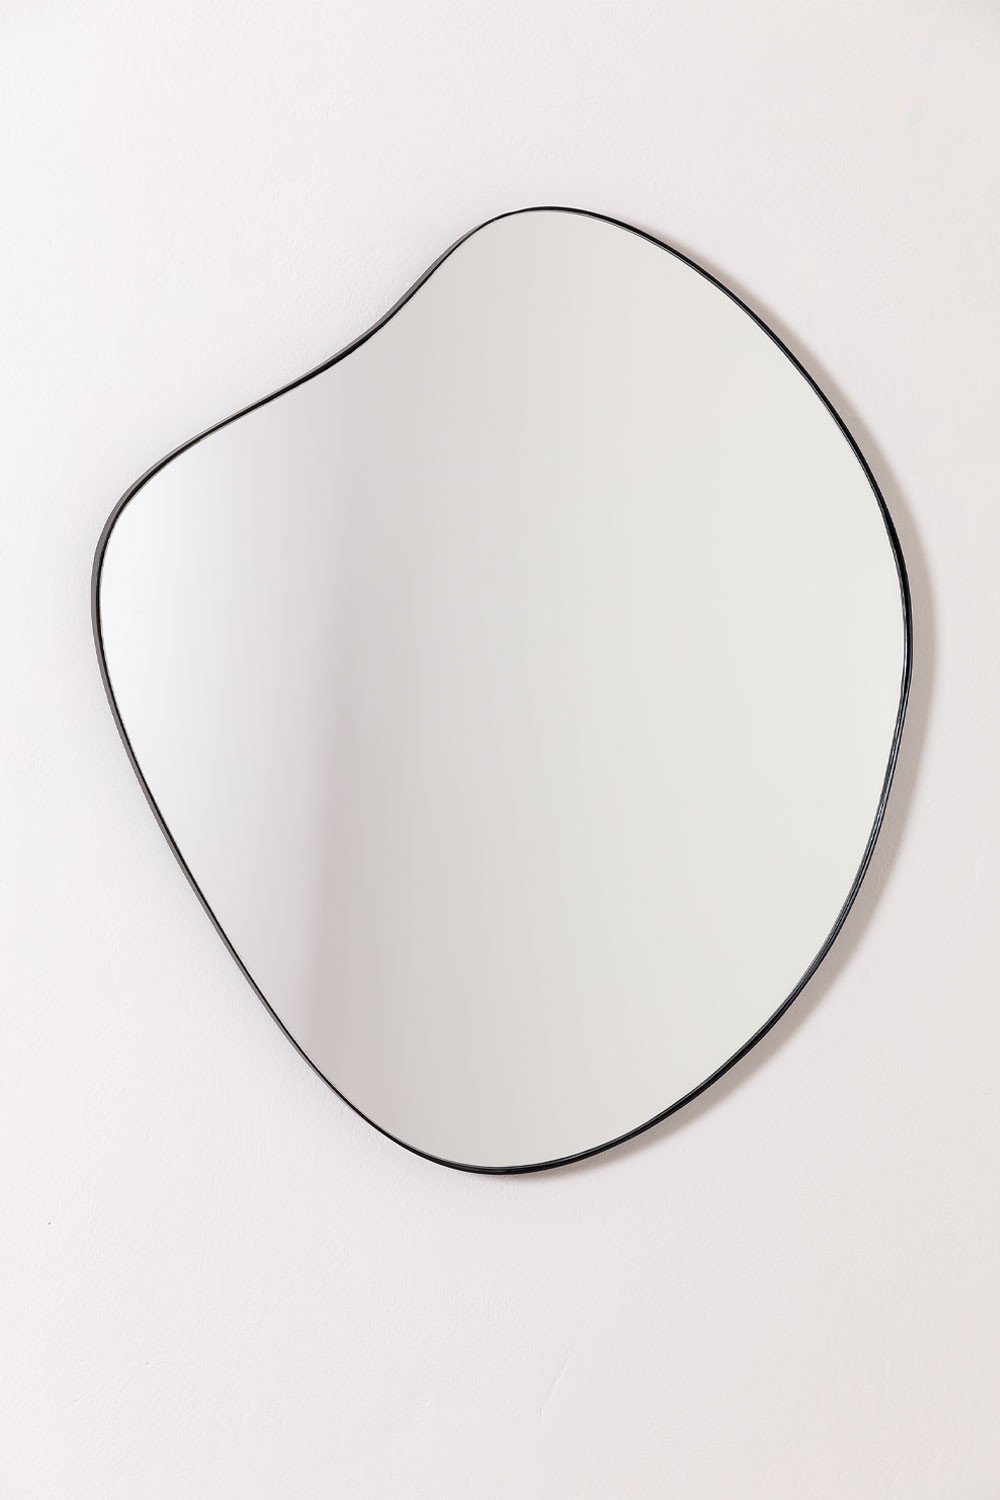 Specchio da parete in metallo (67x60 cm) Astrid, immagine della galleria 1